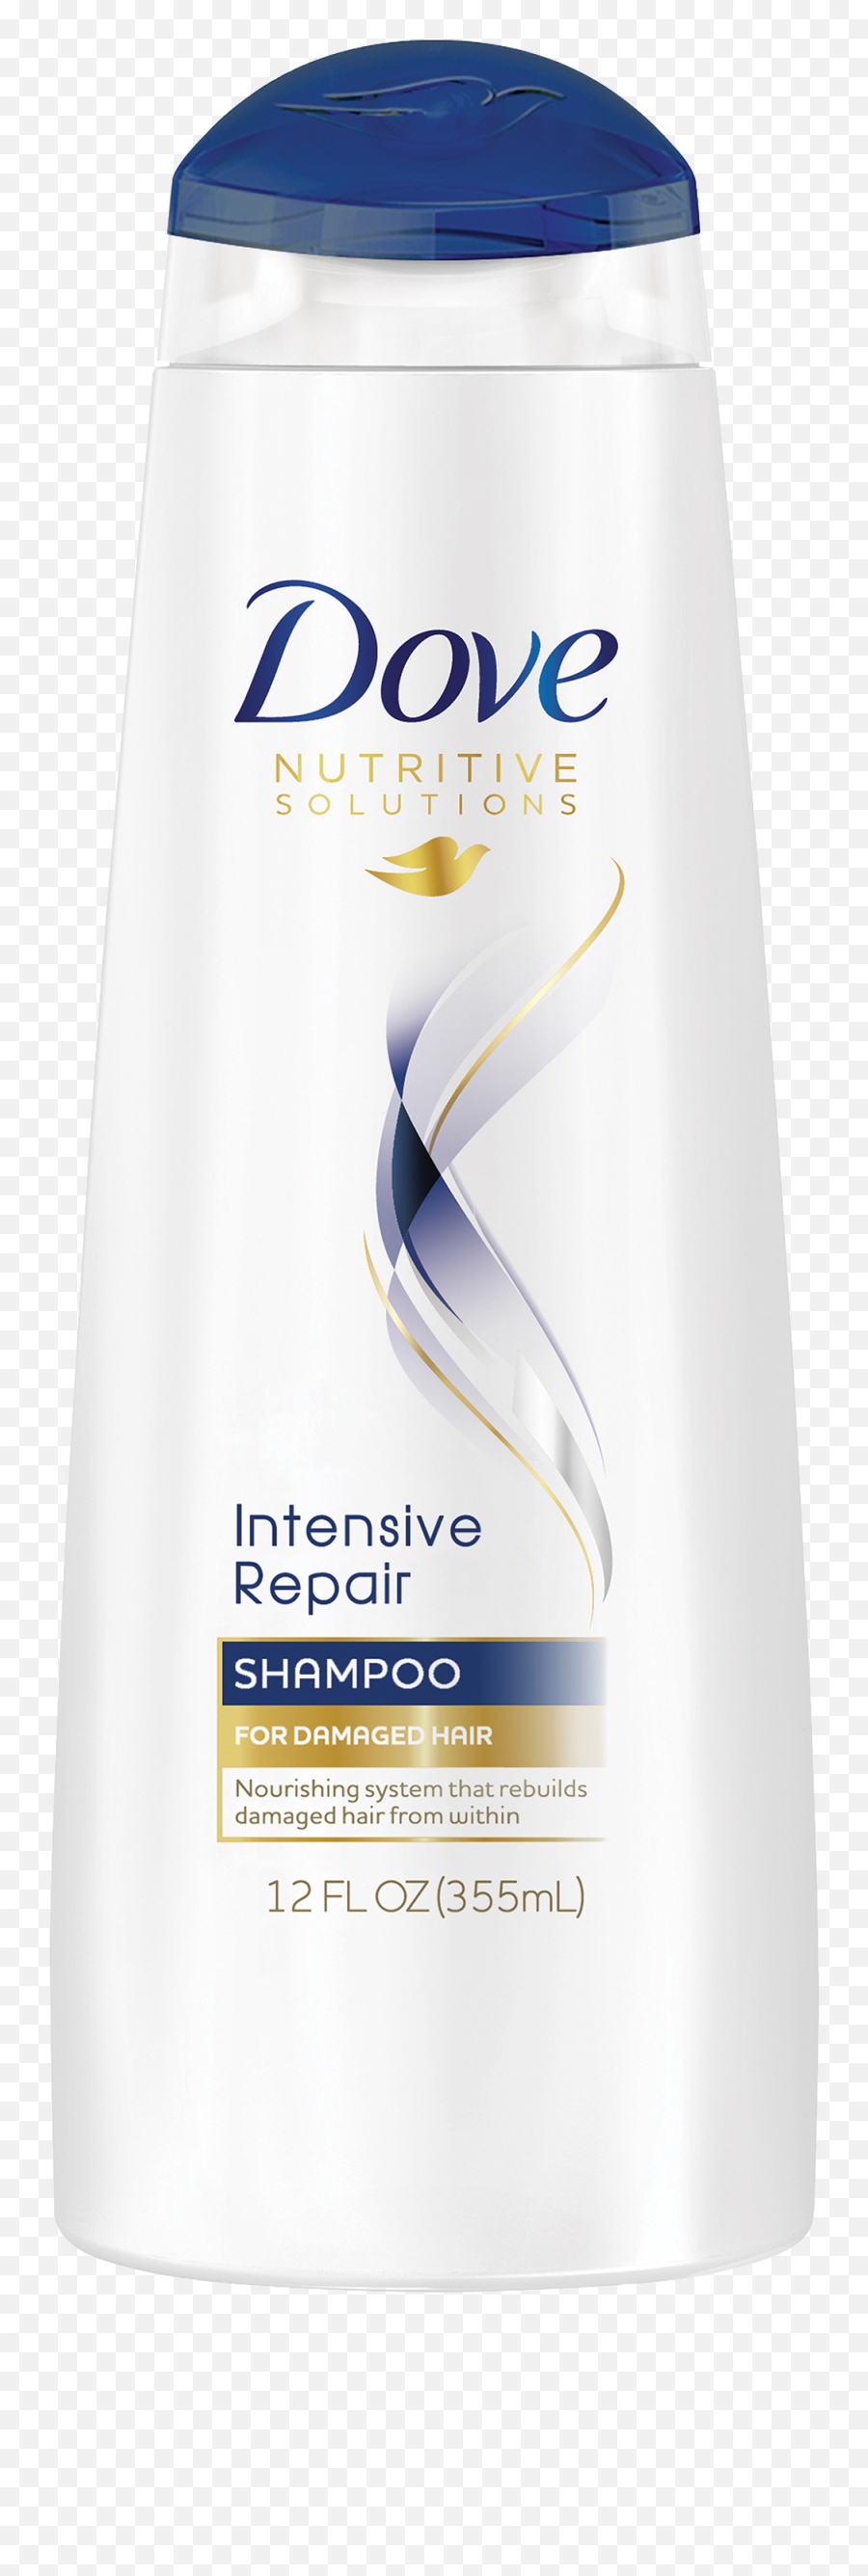 Shampoo Png Images Hd - Dove Blue Shampoo,Shampoo Png